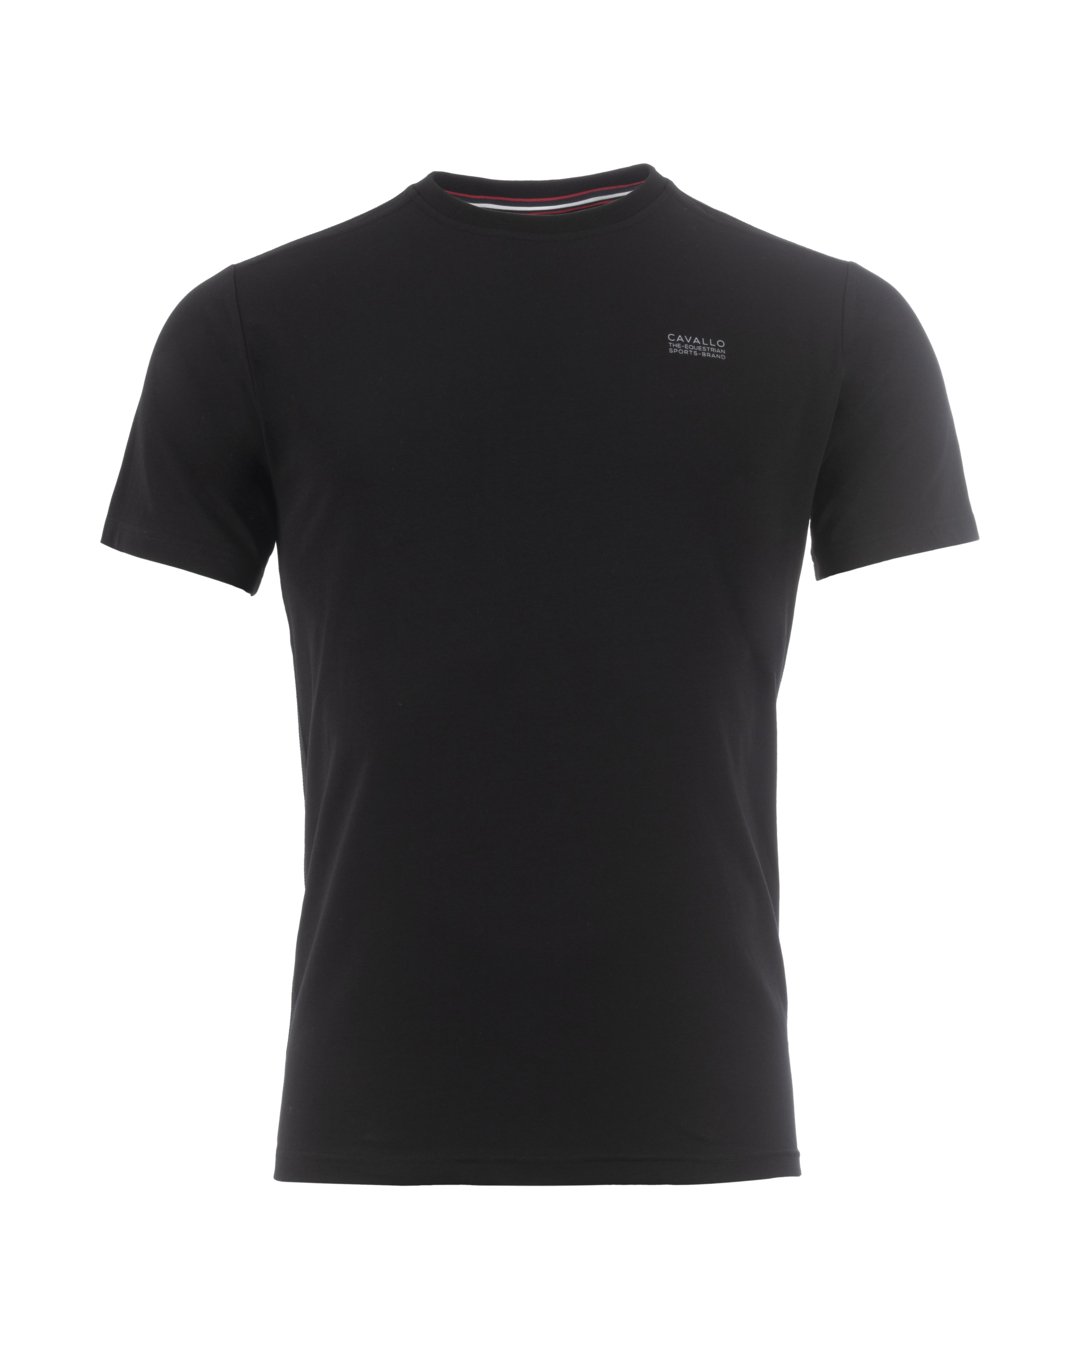 T-Shirt CavalCotton R-Neck Schwarz 44